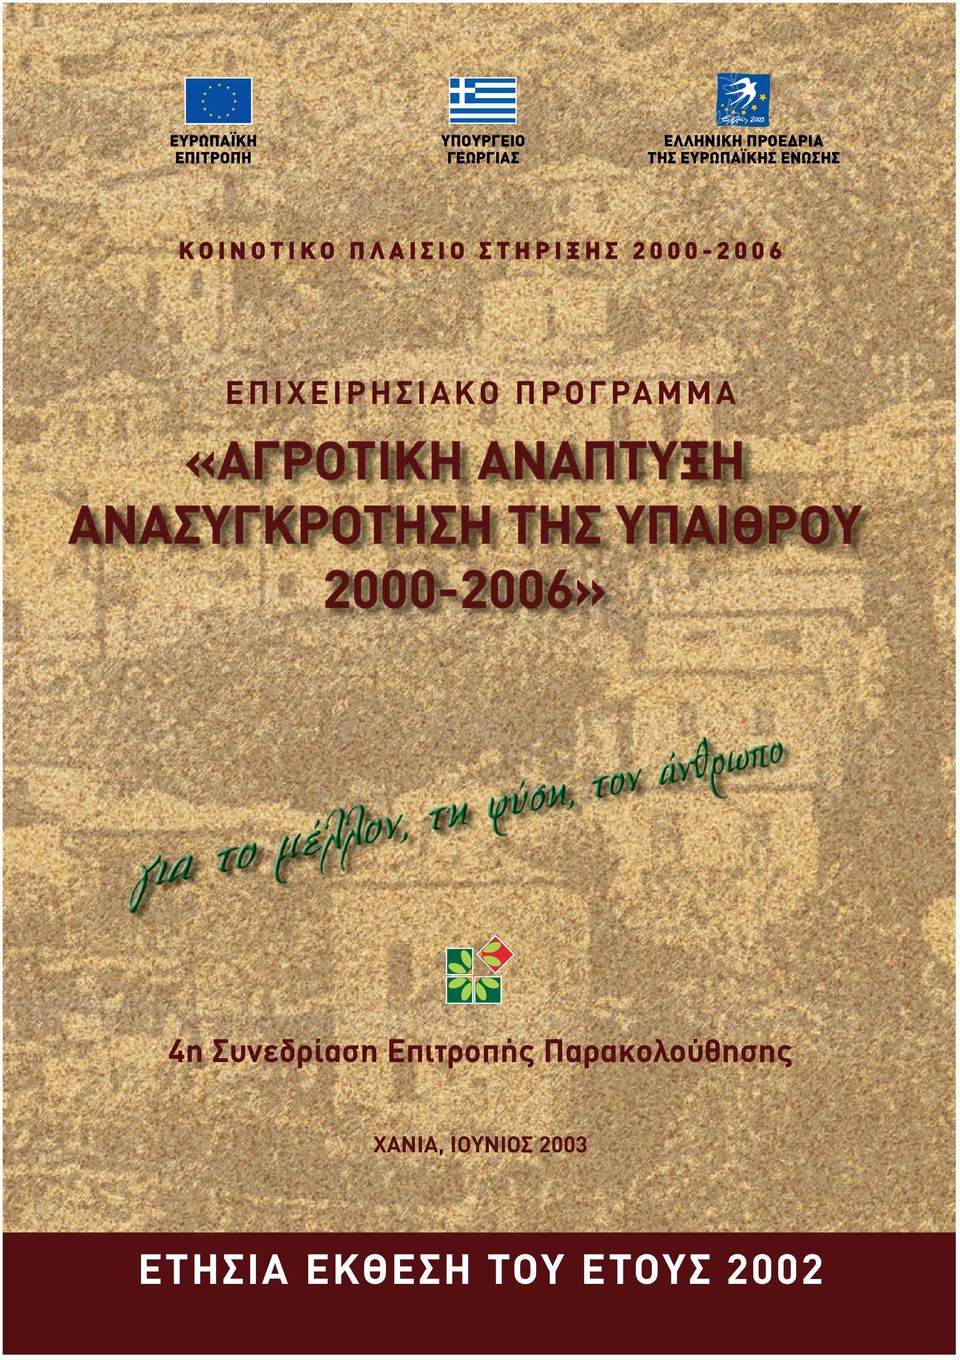 2000-2006 EΠIXEIPHΣIAKO ΠPOΓPAMMA 4η Συνεδρίαση